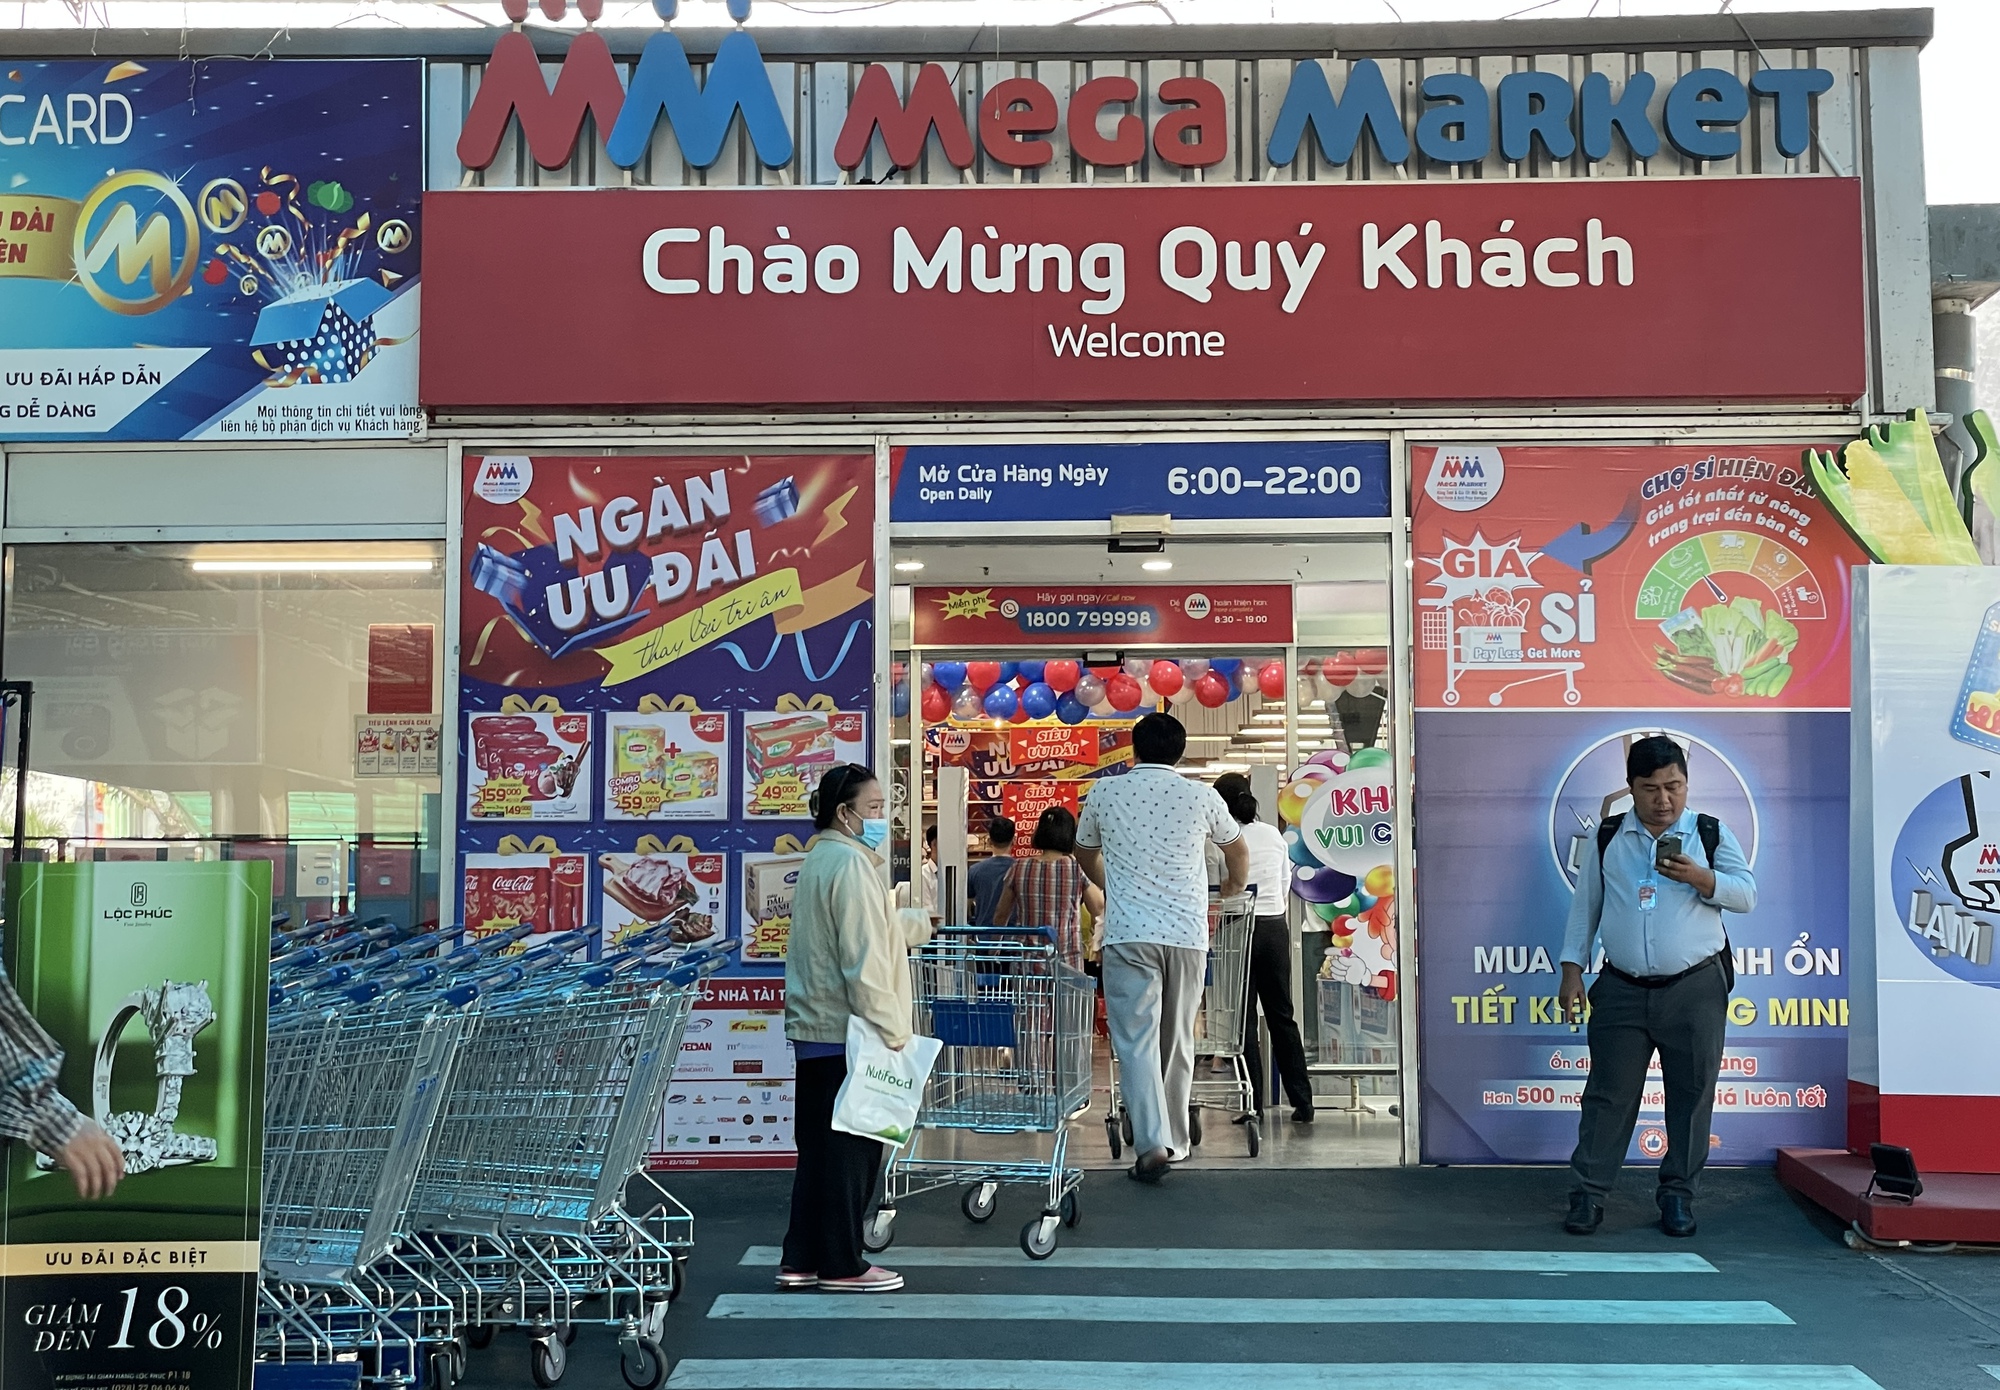 MM Mega Market tiết lộ mục tiêu 59 siêu thị tại Việt Nam, đang rót 20 triệu USD vào 1 trung tâm mua sắm - Ảnh 1.